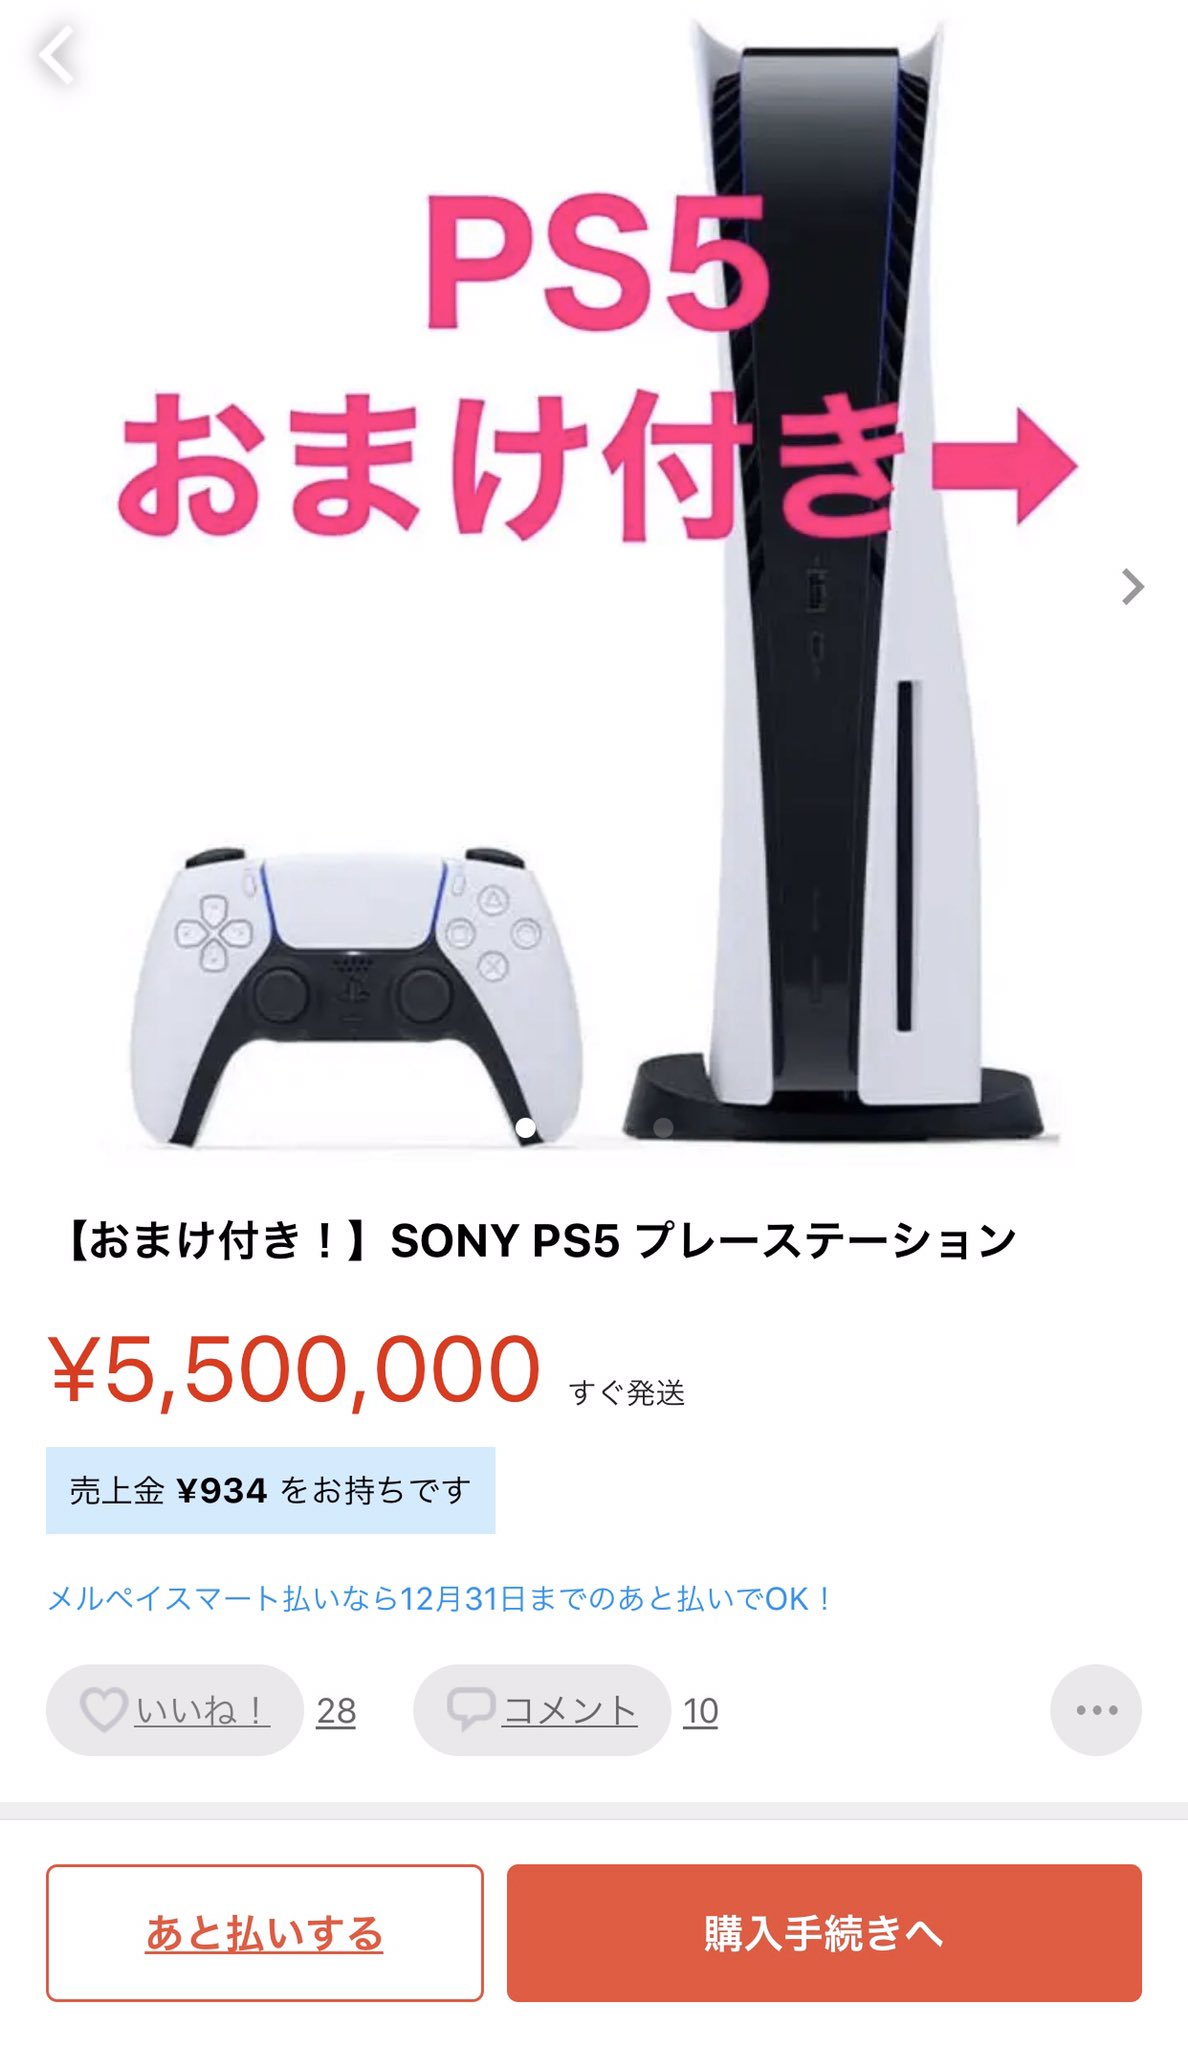 일본 PS5 끼워팔기 수준ㅋㅋㅋㅋ.JPG